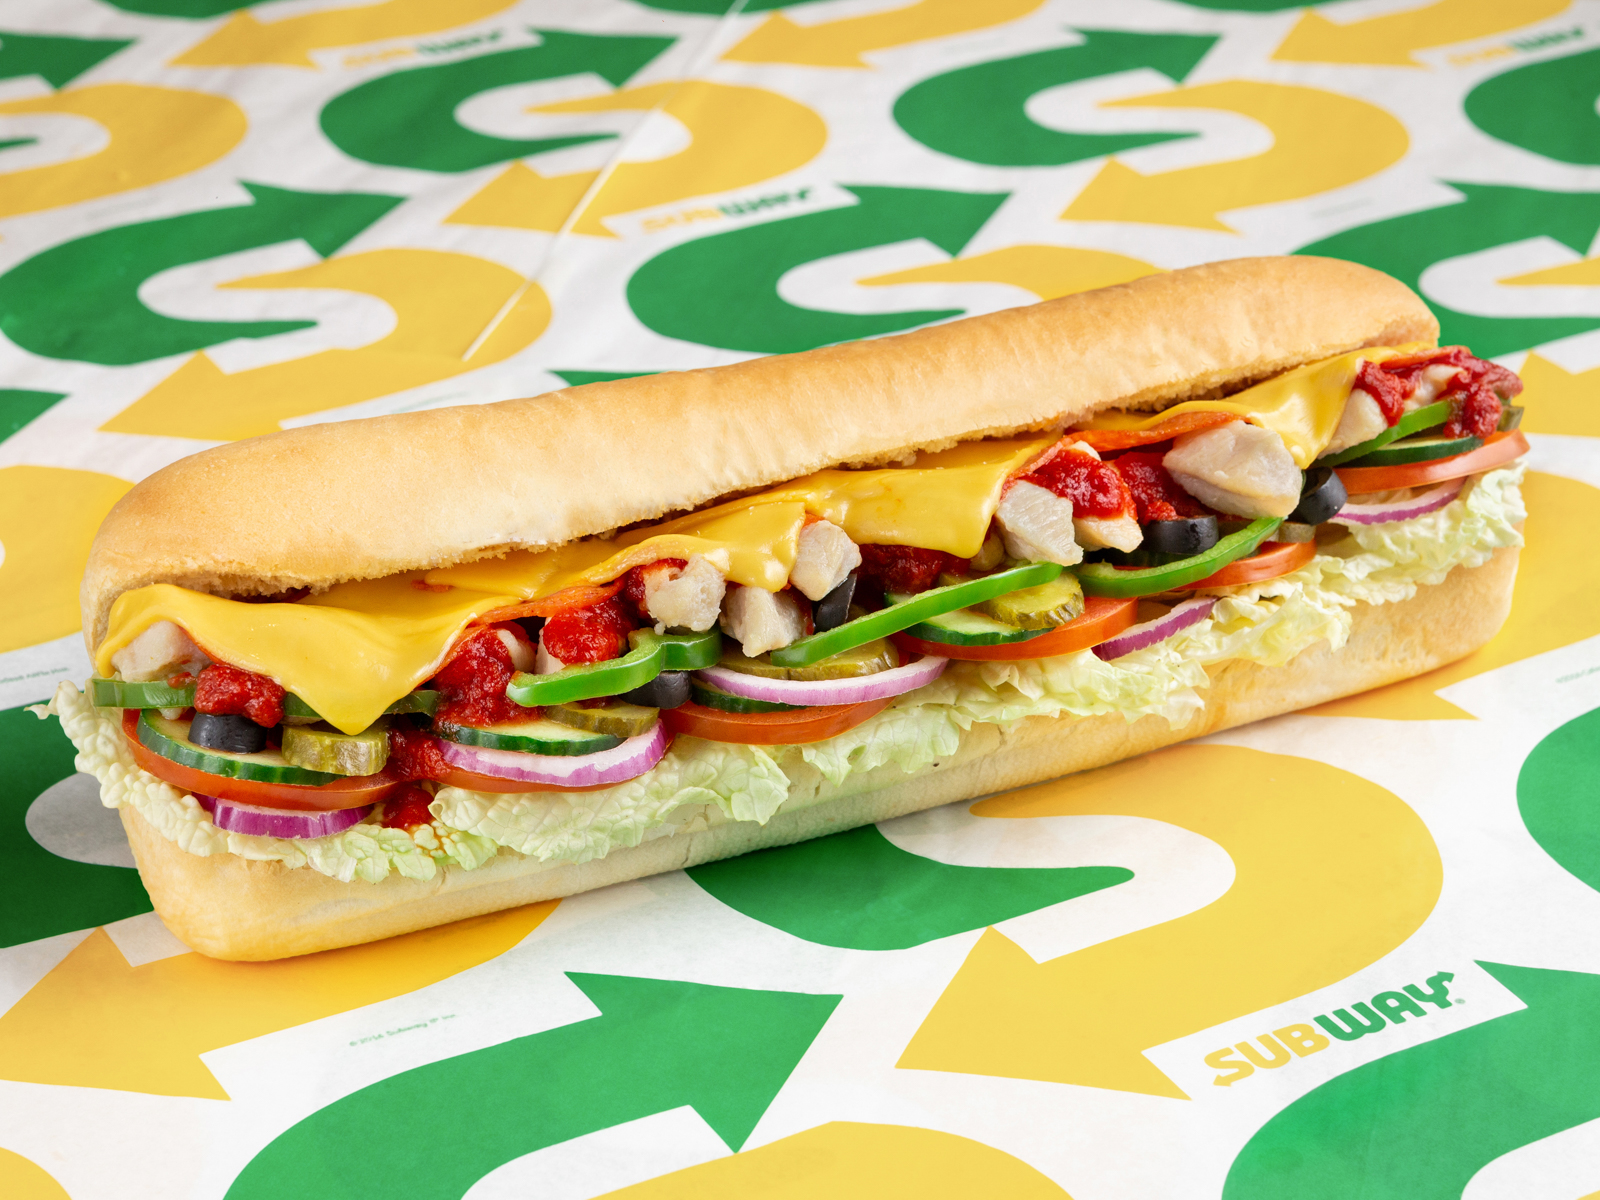 Яндекс.Еда" начала доставлять сэндвичи из Subway.